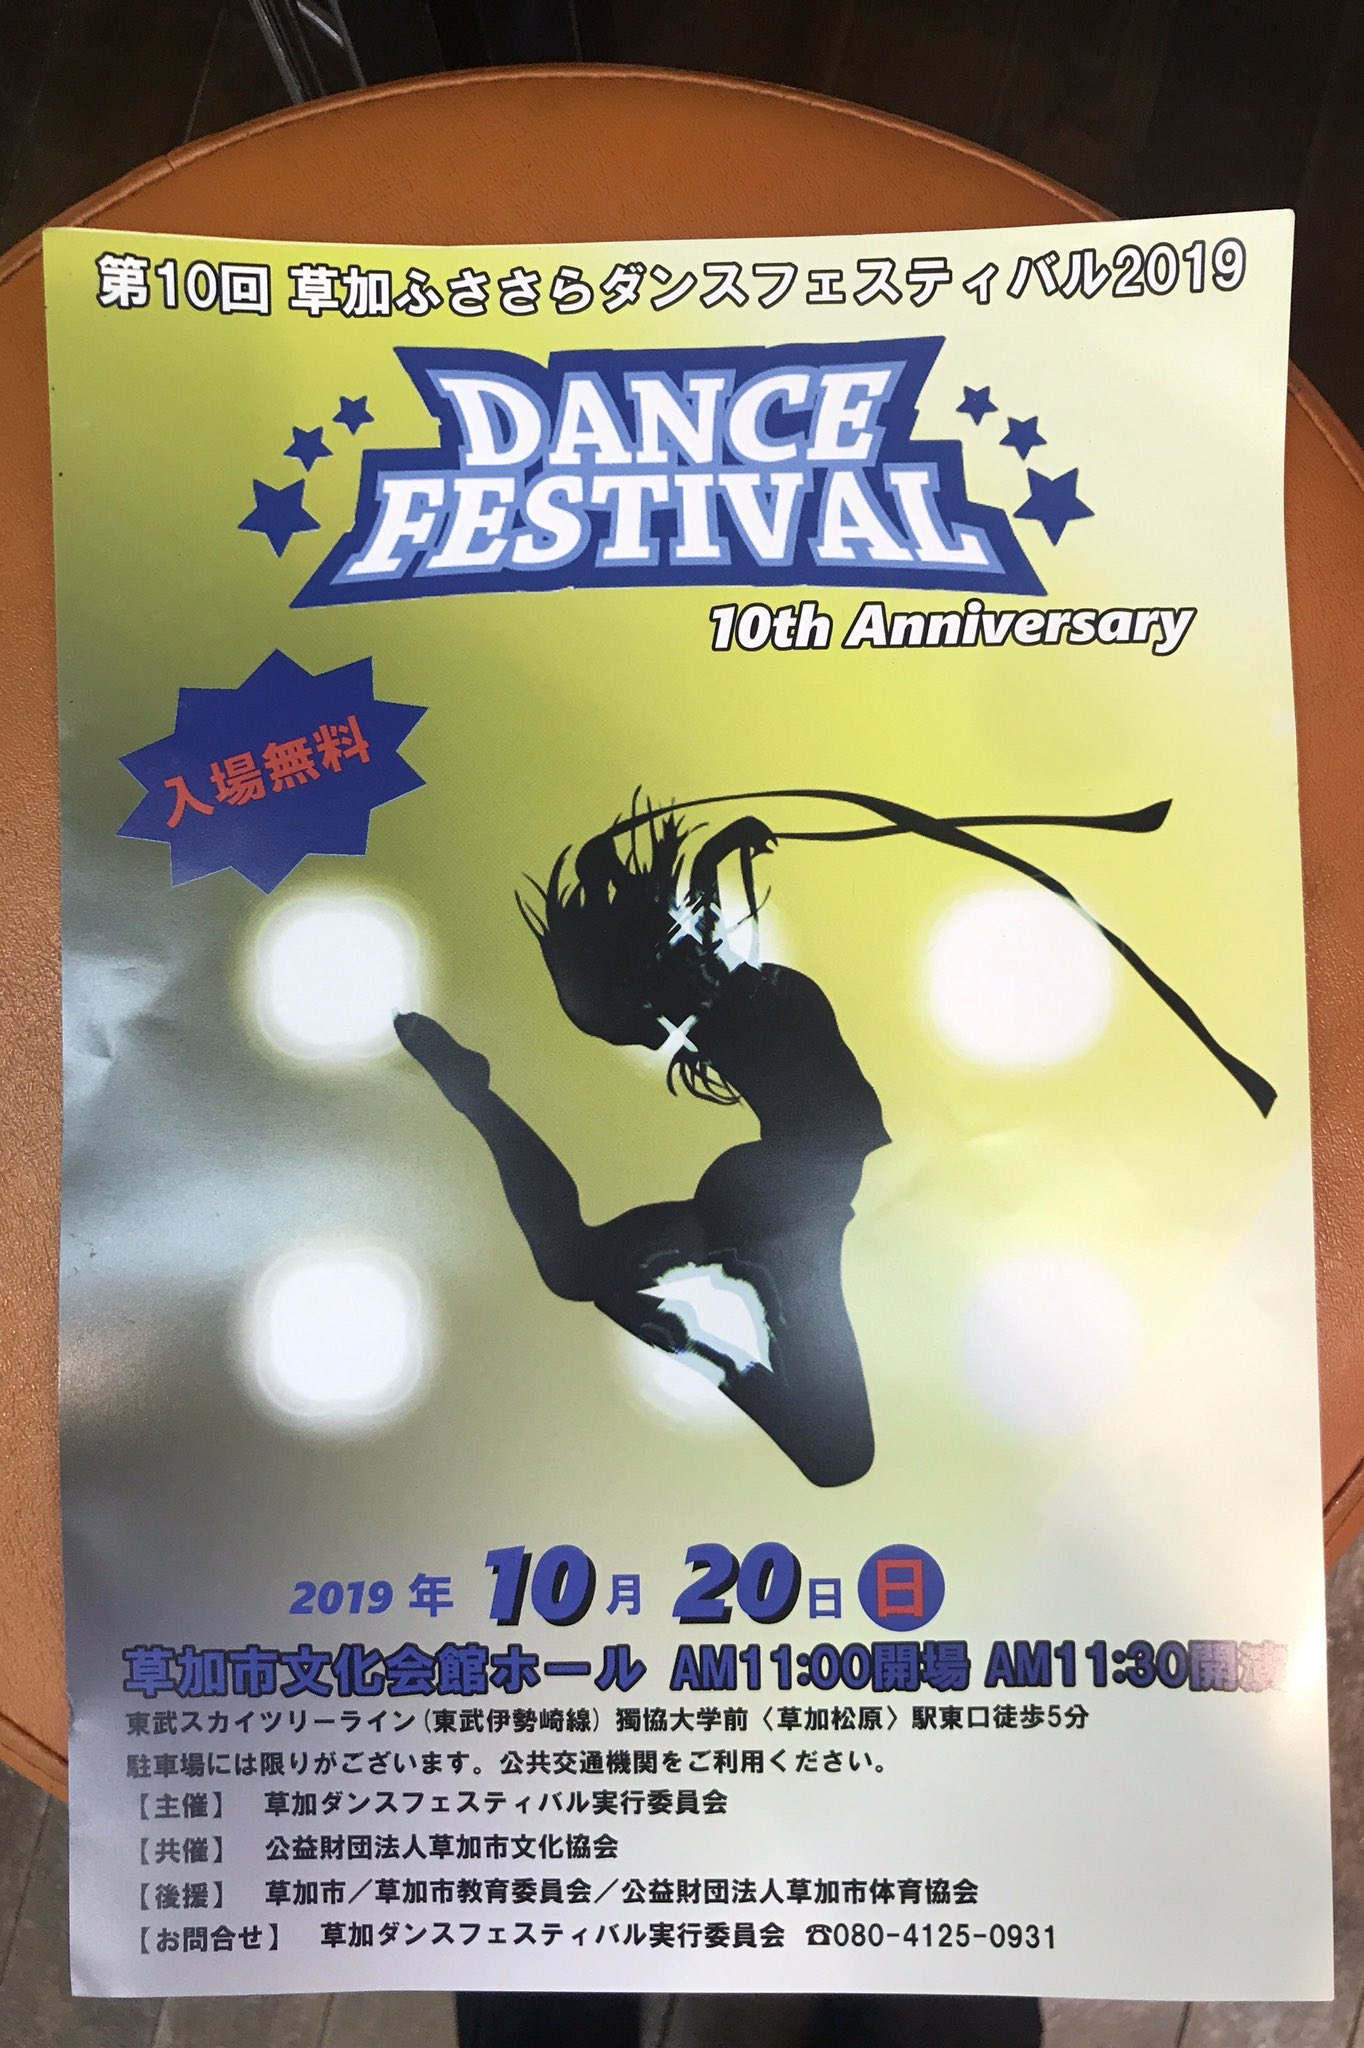 Hasamiimasamii 草加ふささらダンスフェスティバル 今年は第10回 なんと4曲踊ります メインの50番 チーム名はダサカッコイイと評判の ゴージャズ よさこいチーム 大姫晩星 で2曲 10周年企画でスリラー踊りましゅ 入場無料 ぜひキテネ ぽぅー